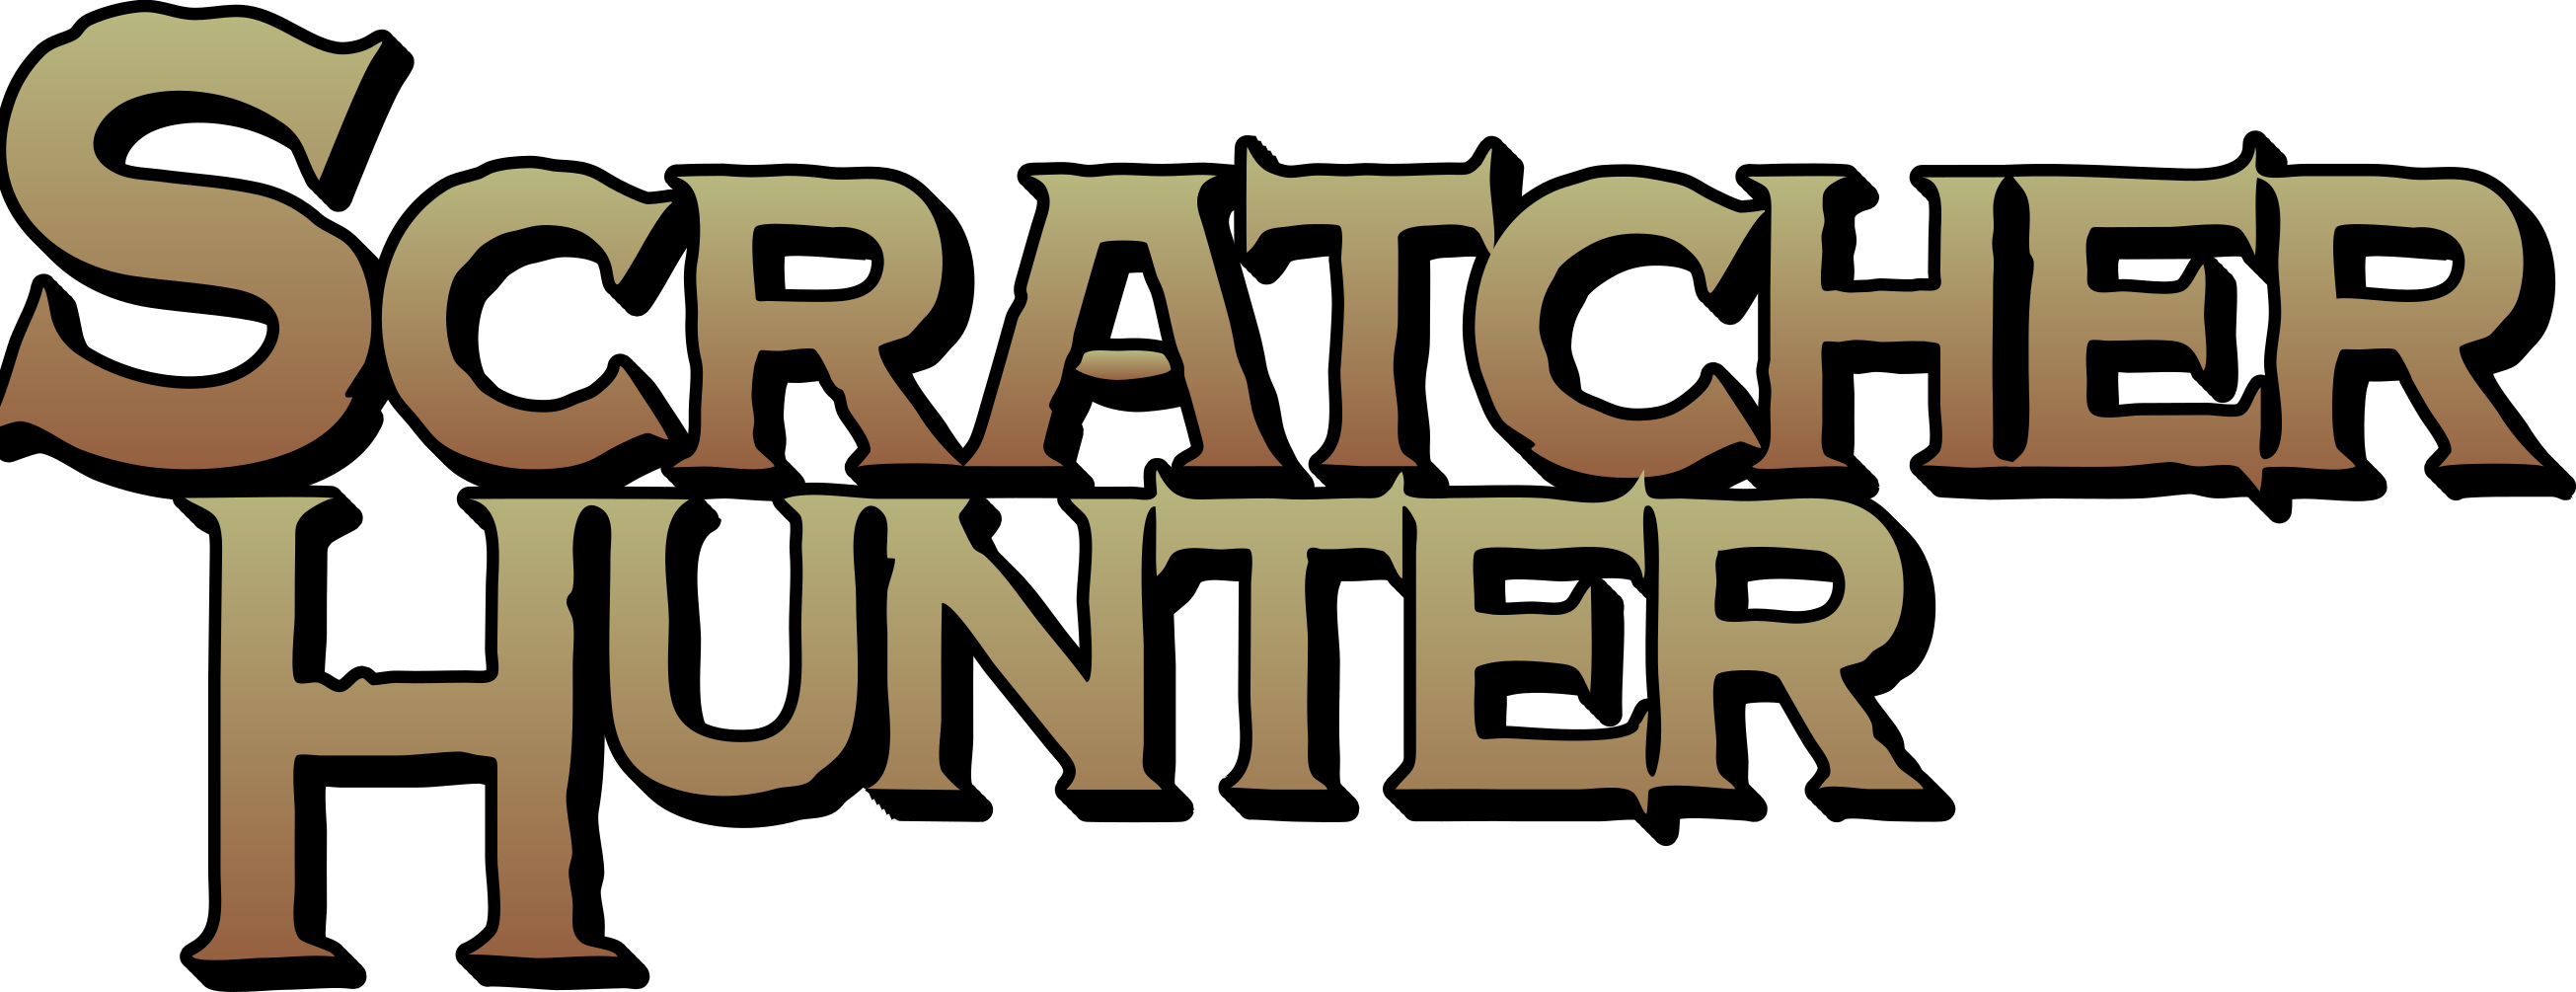 Scratcher Hunter Title Update 04